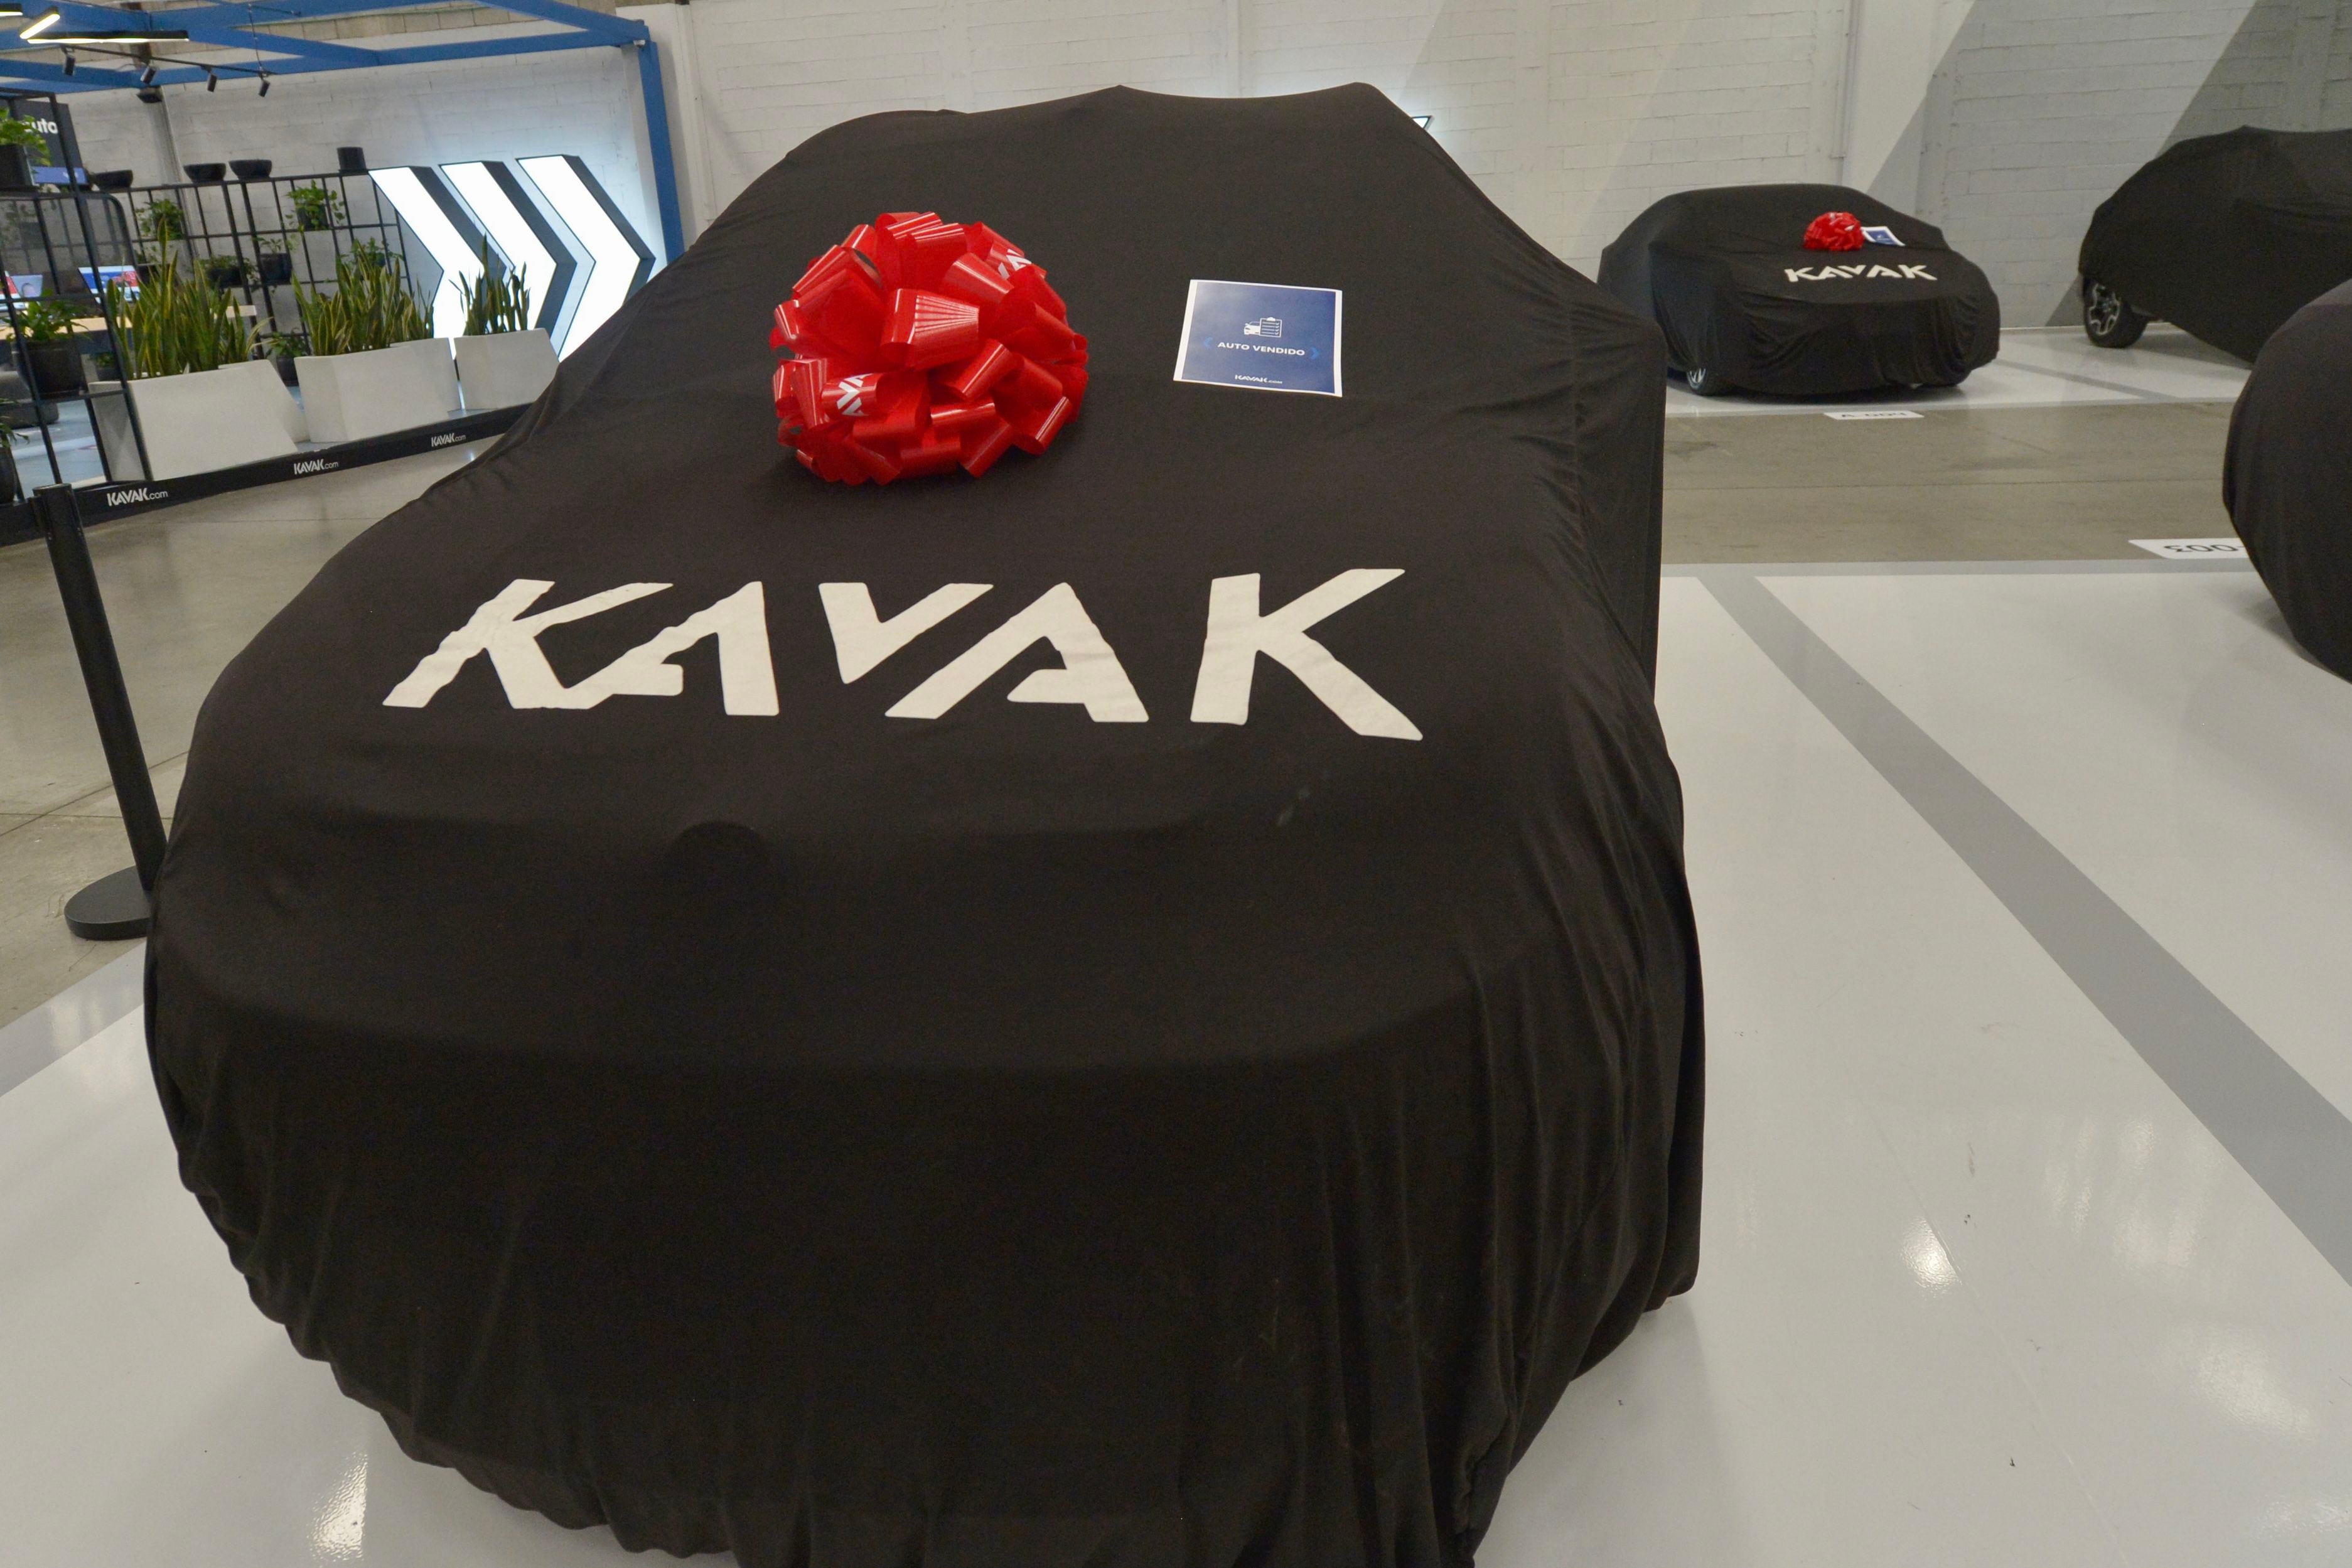 Kavak quiere que tengas ‘la experiencia perfecta’; invertirá en mejora de proceso de compra